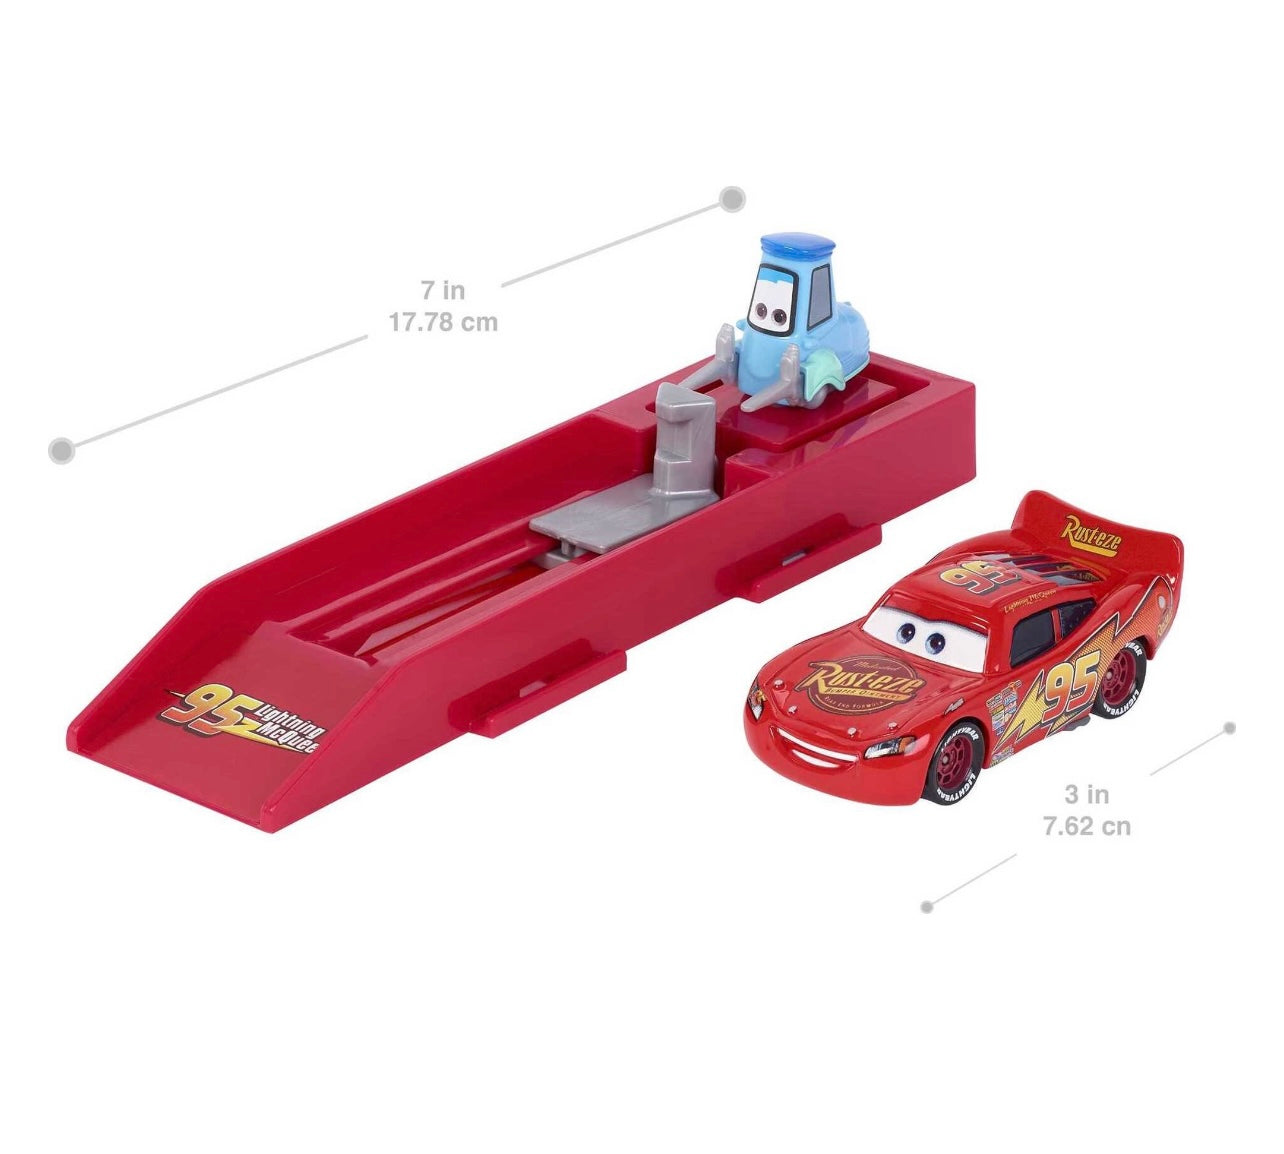 Disney And Pixar’s Cars Die-Cast Vehicle